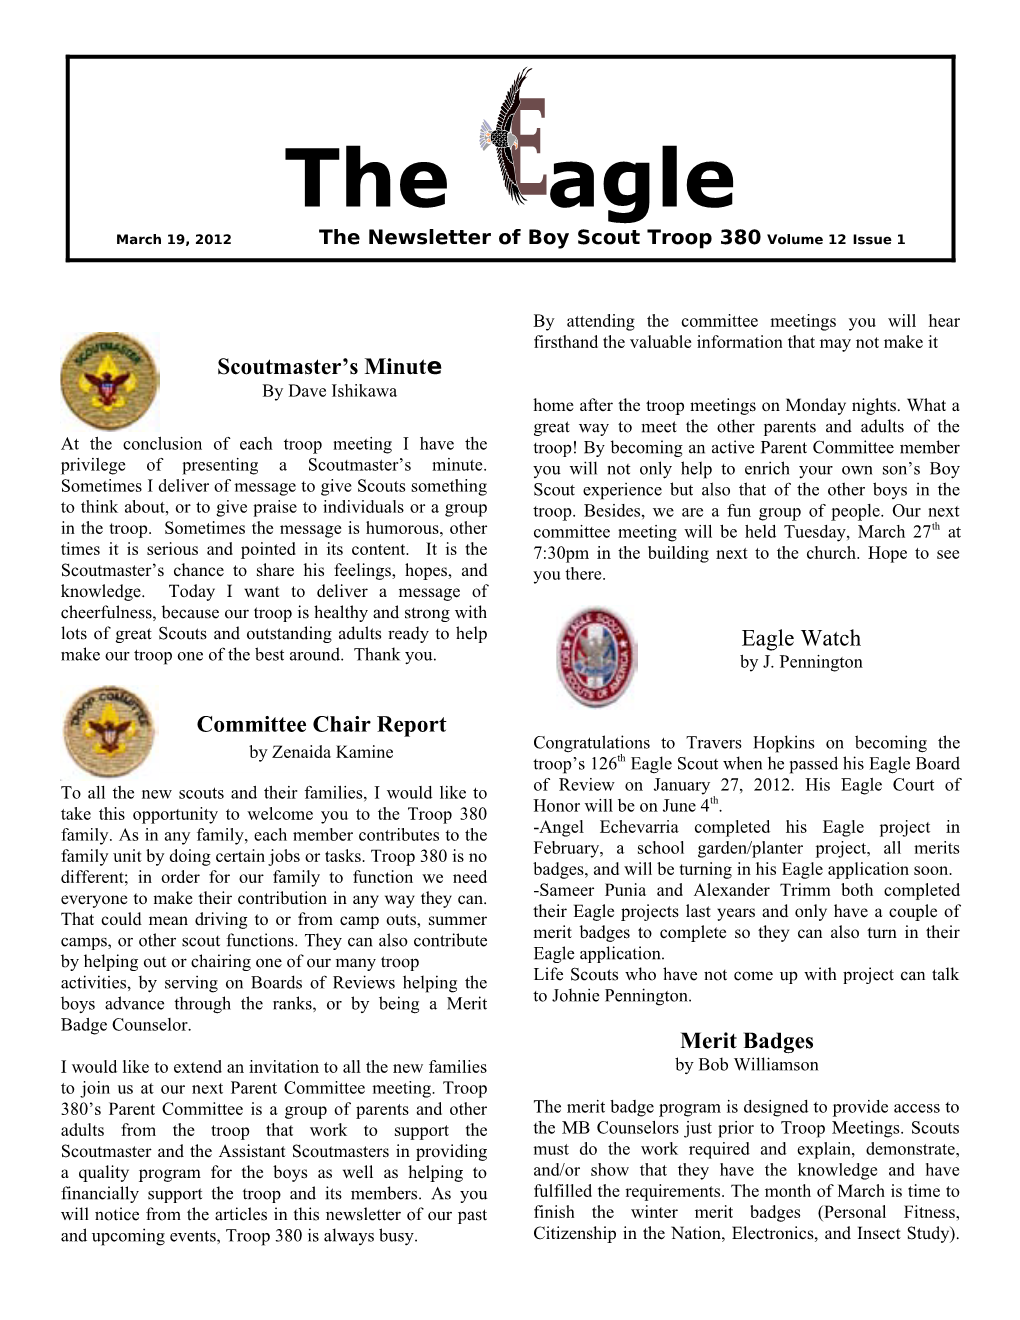 The Eagle V12 #1